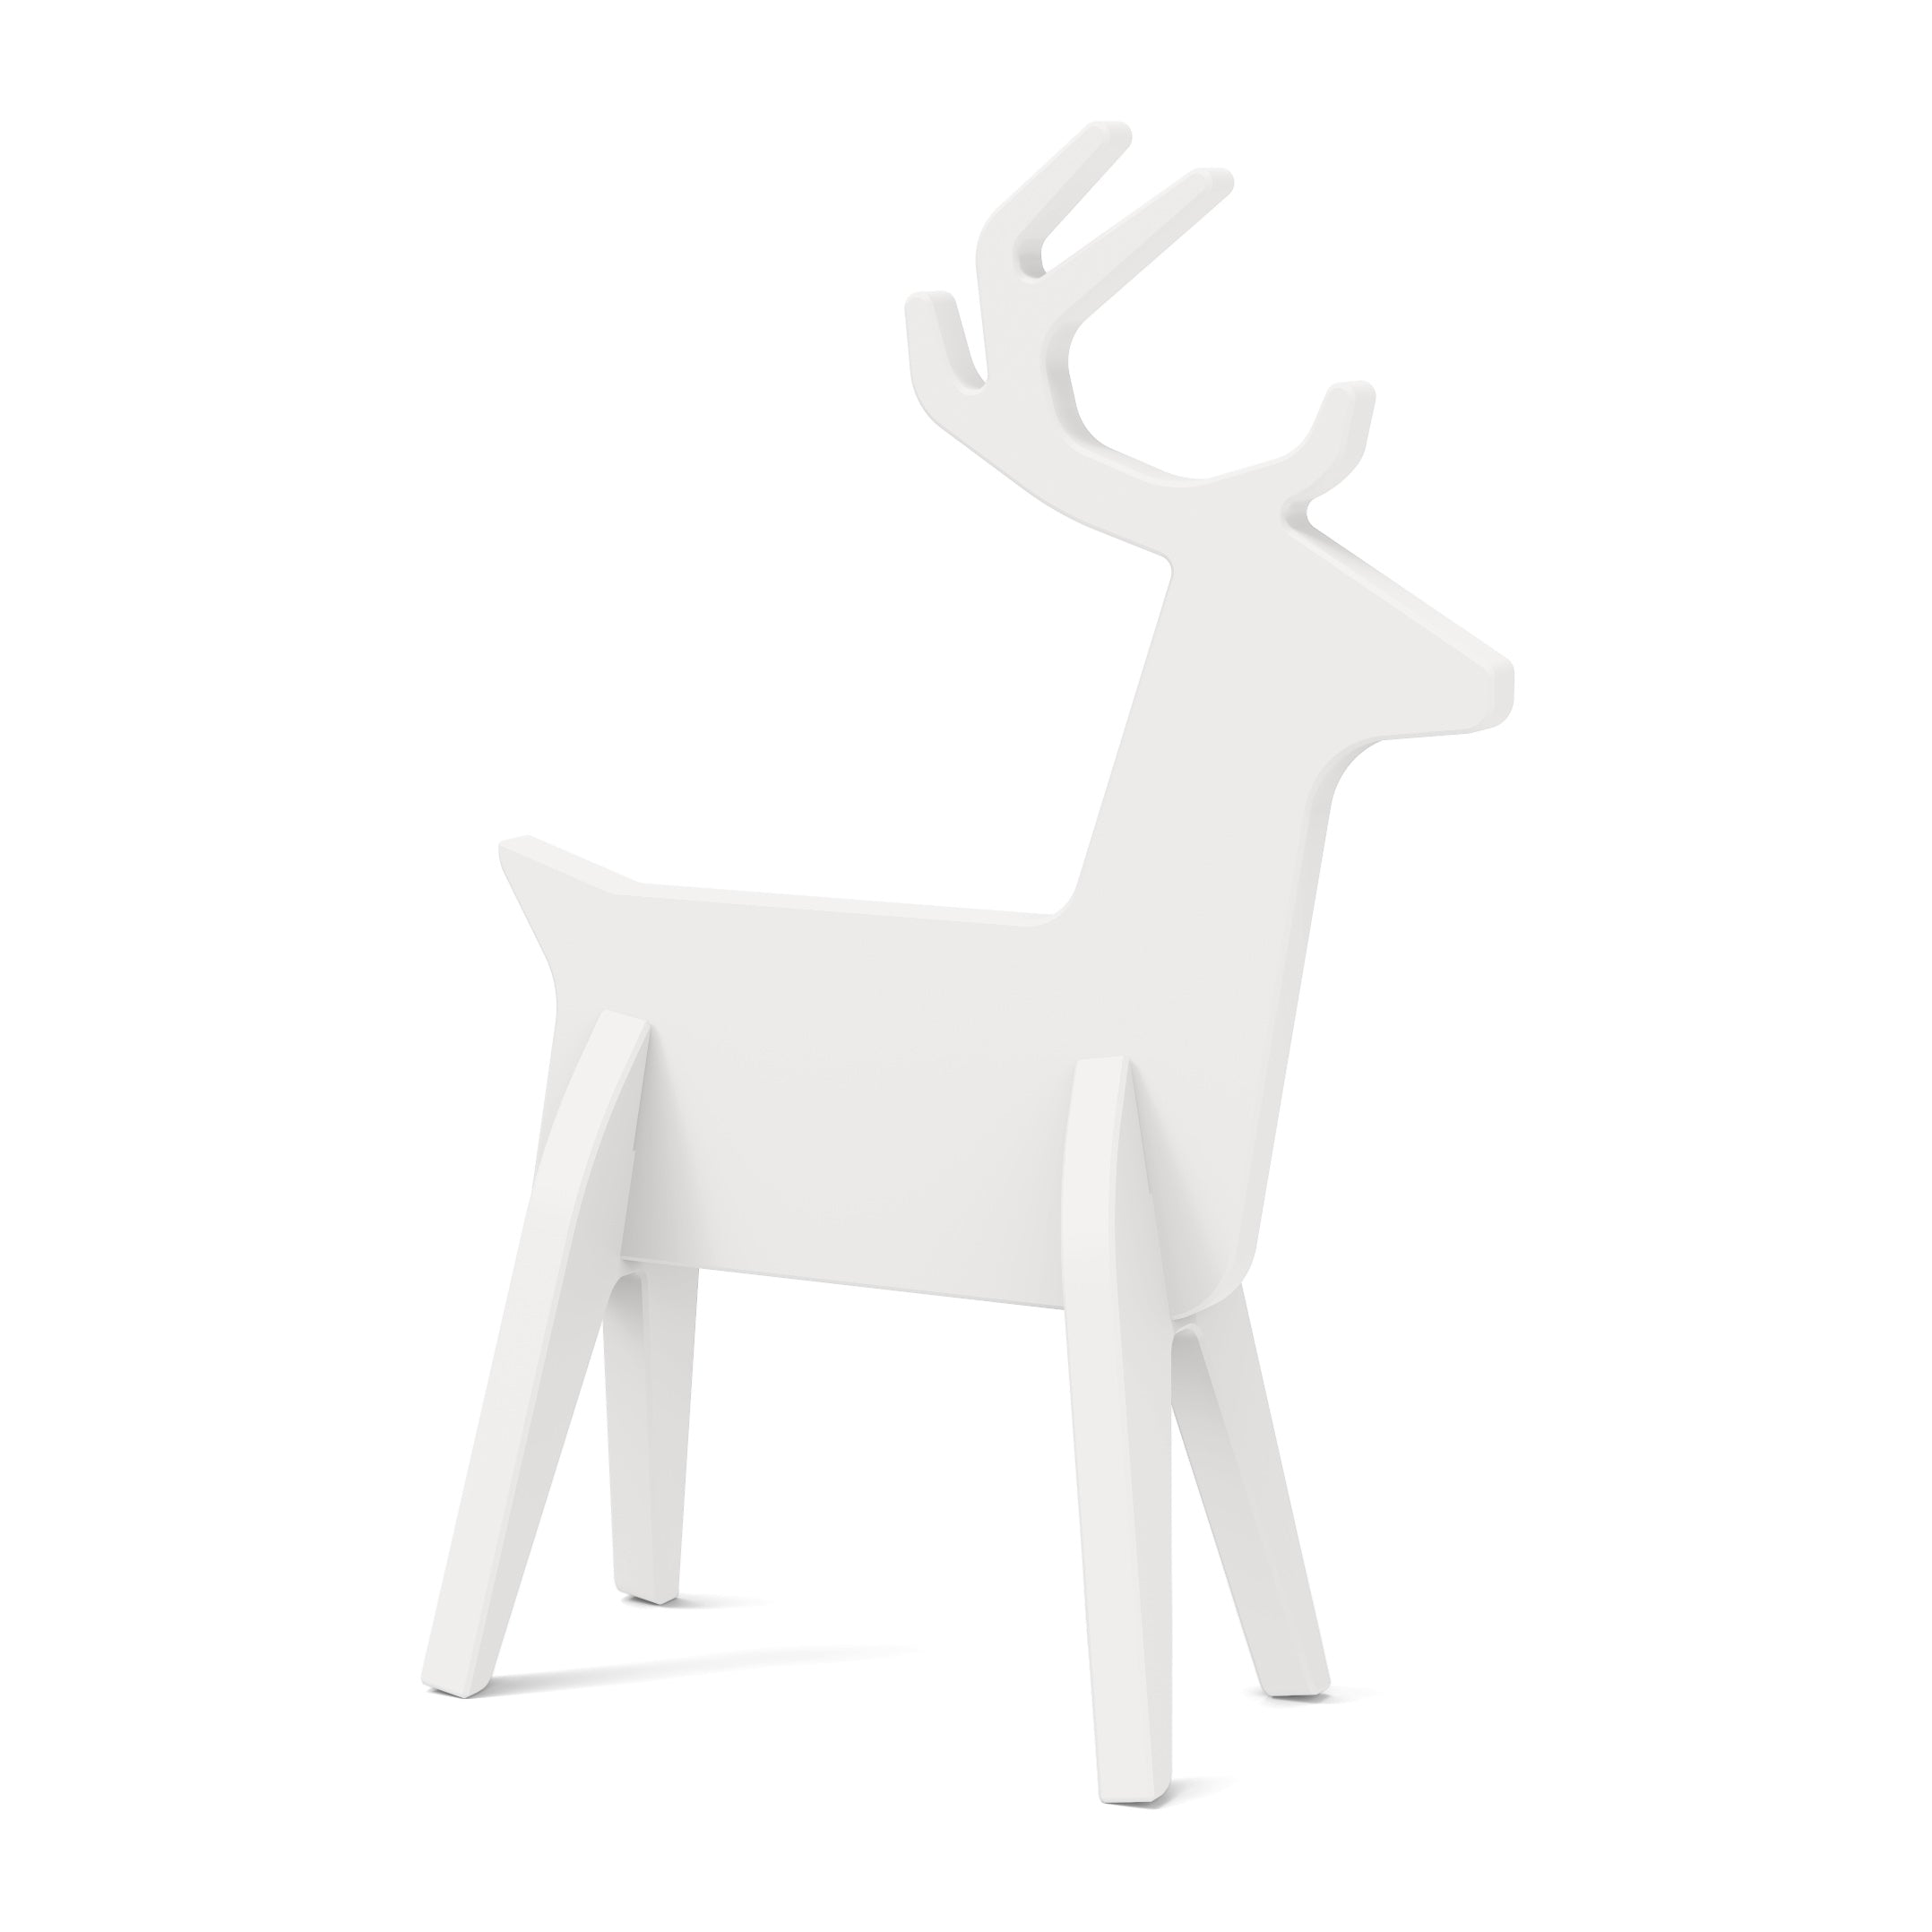 reindeer in cloud white